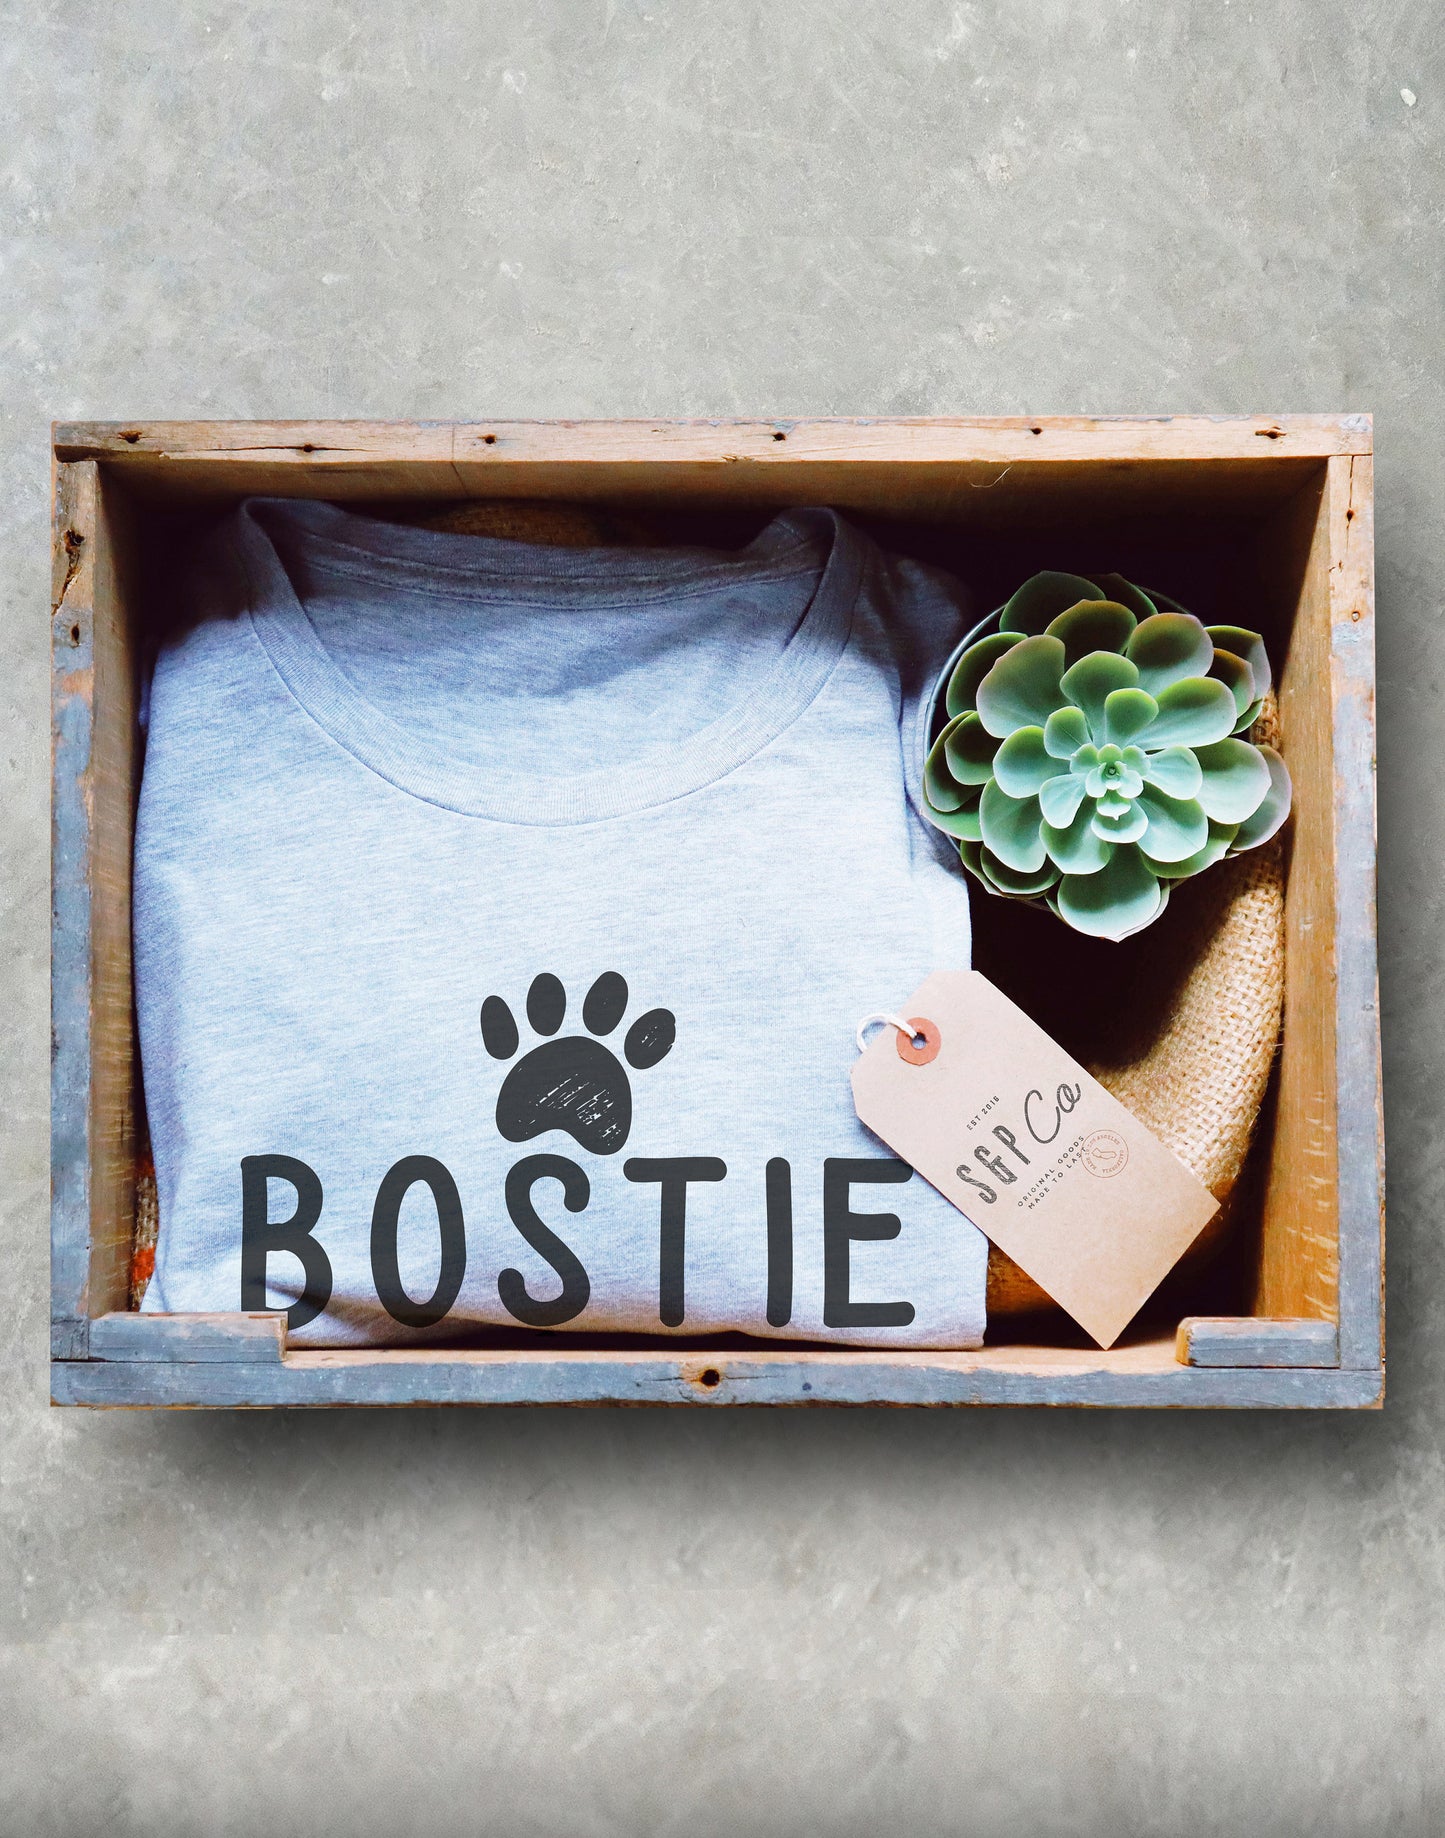 Bostie Mom Unisex Shirt - Boston